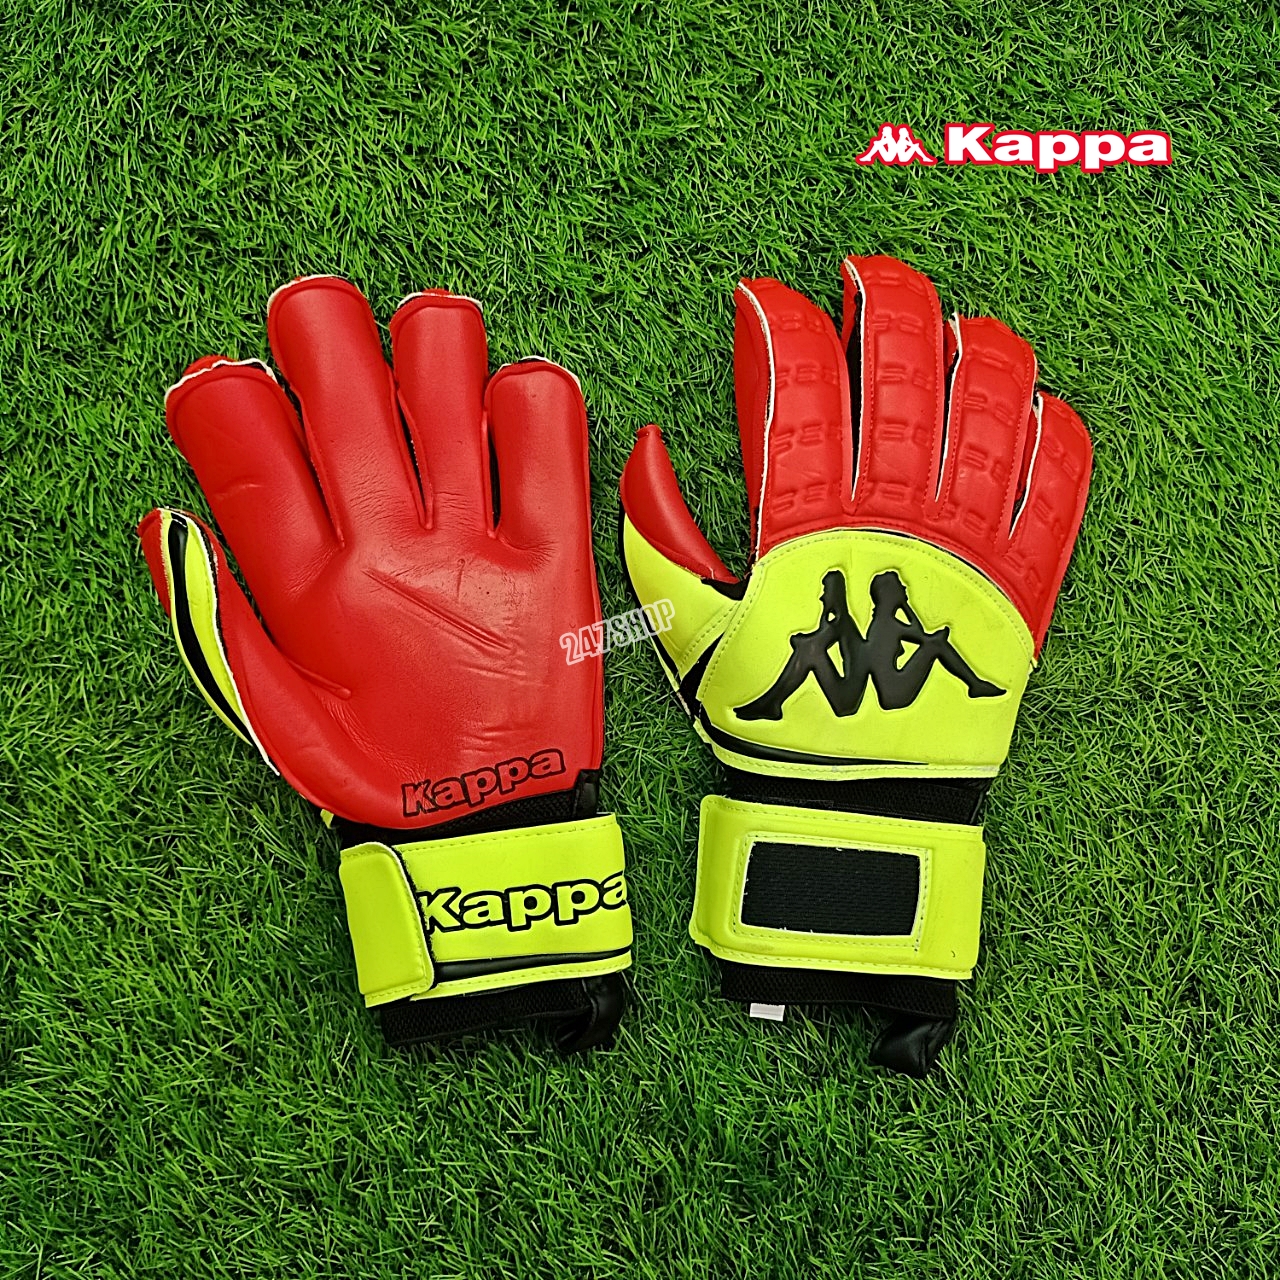 ถุงมือผู้รักษาประตู ถุงมือฟุตบอล ถุงมือแคปป้า ถุงมือโกล KAPPA GV-1512 พร้อมส่ง